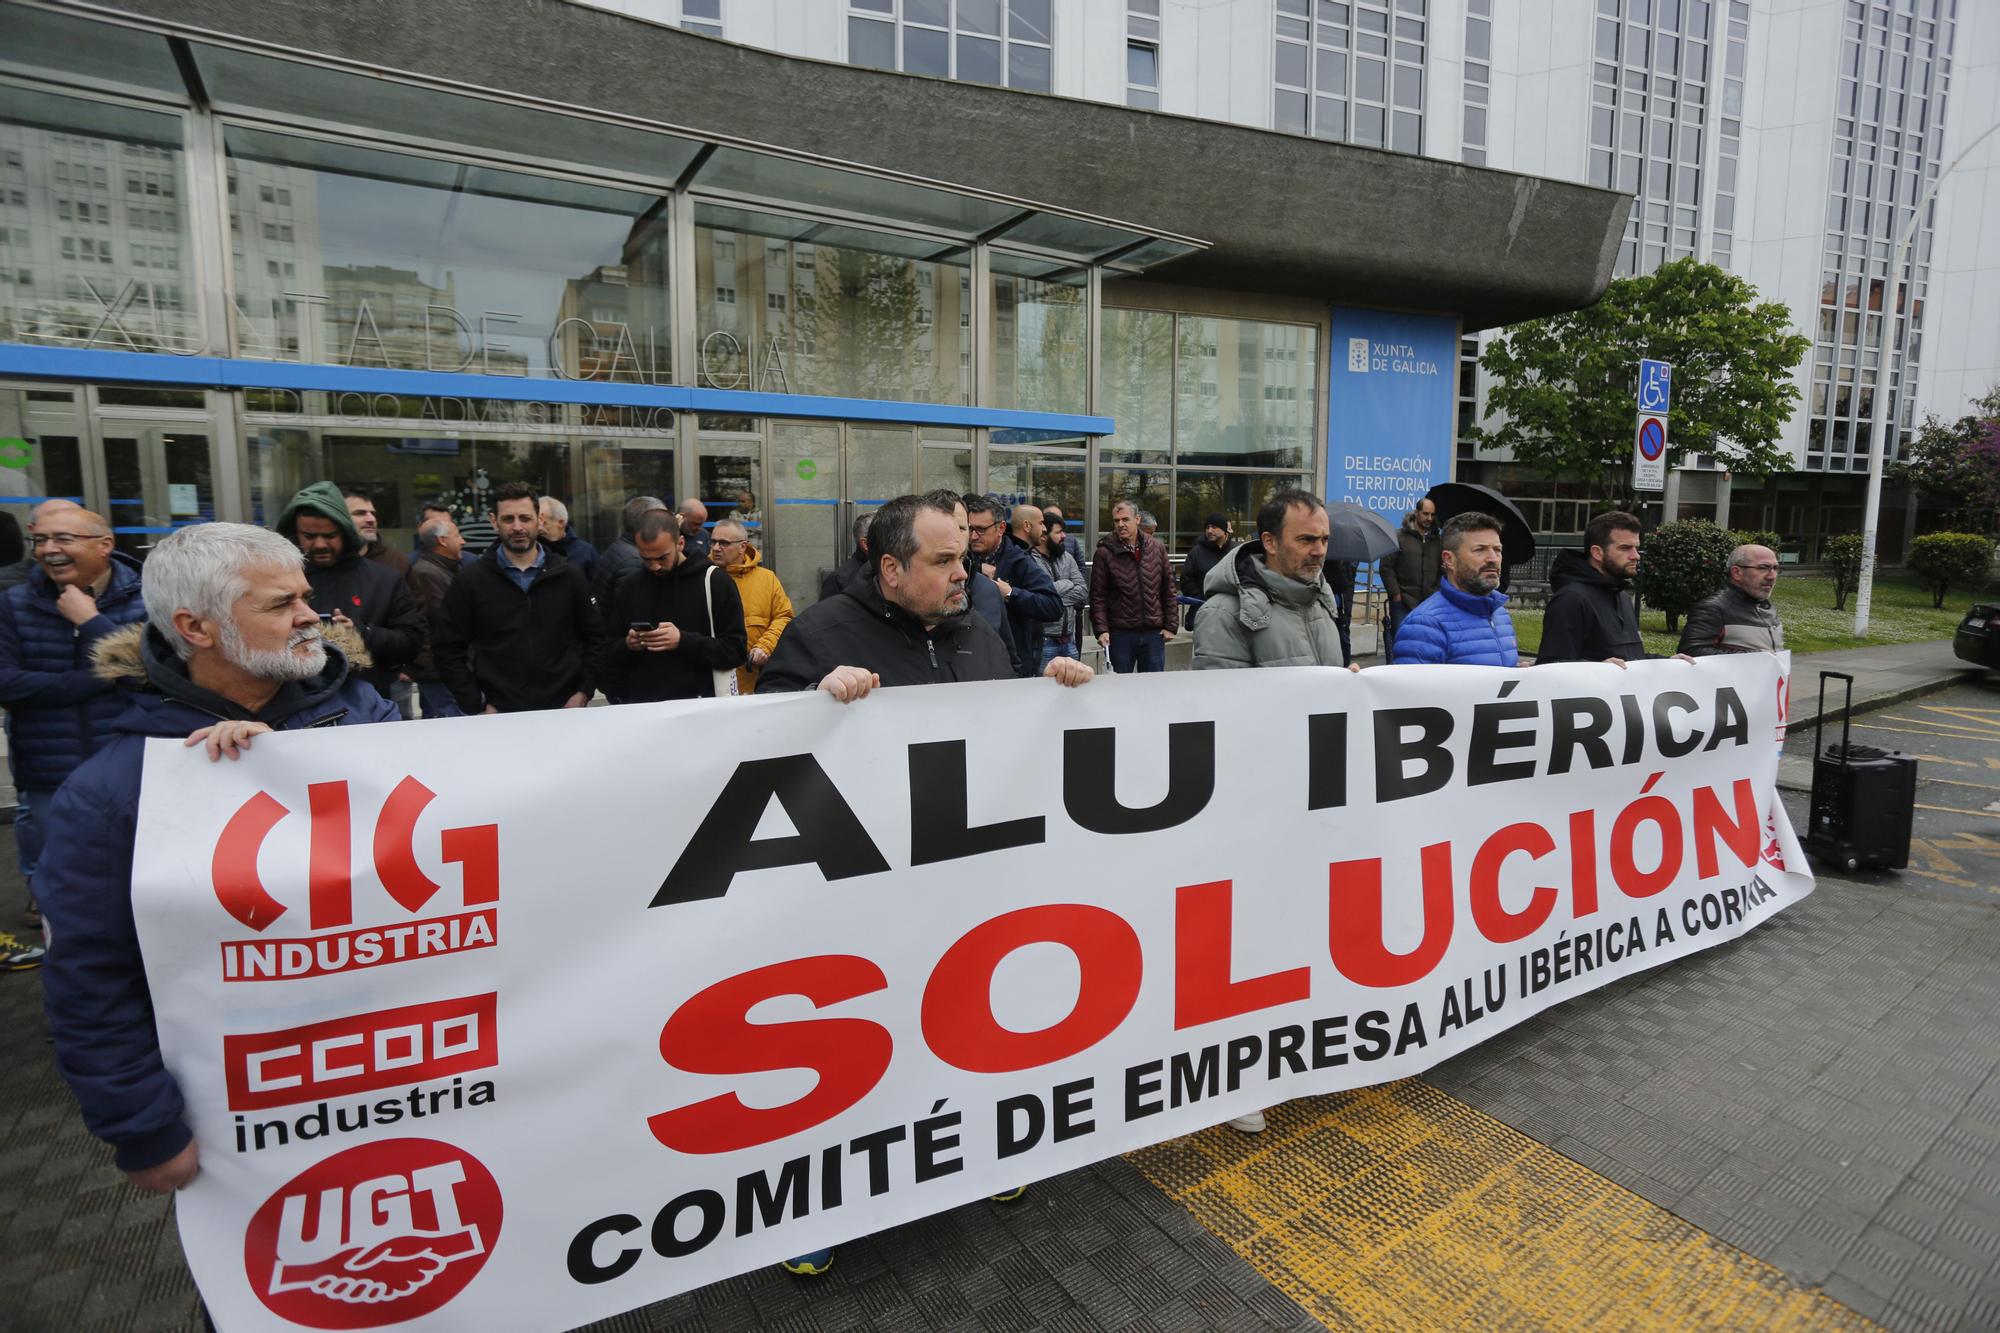 Extrabajadores de Alu Ibérica exigen soluciones a su futuro